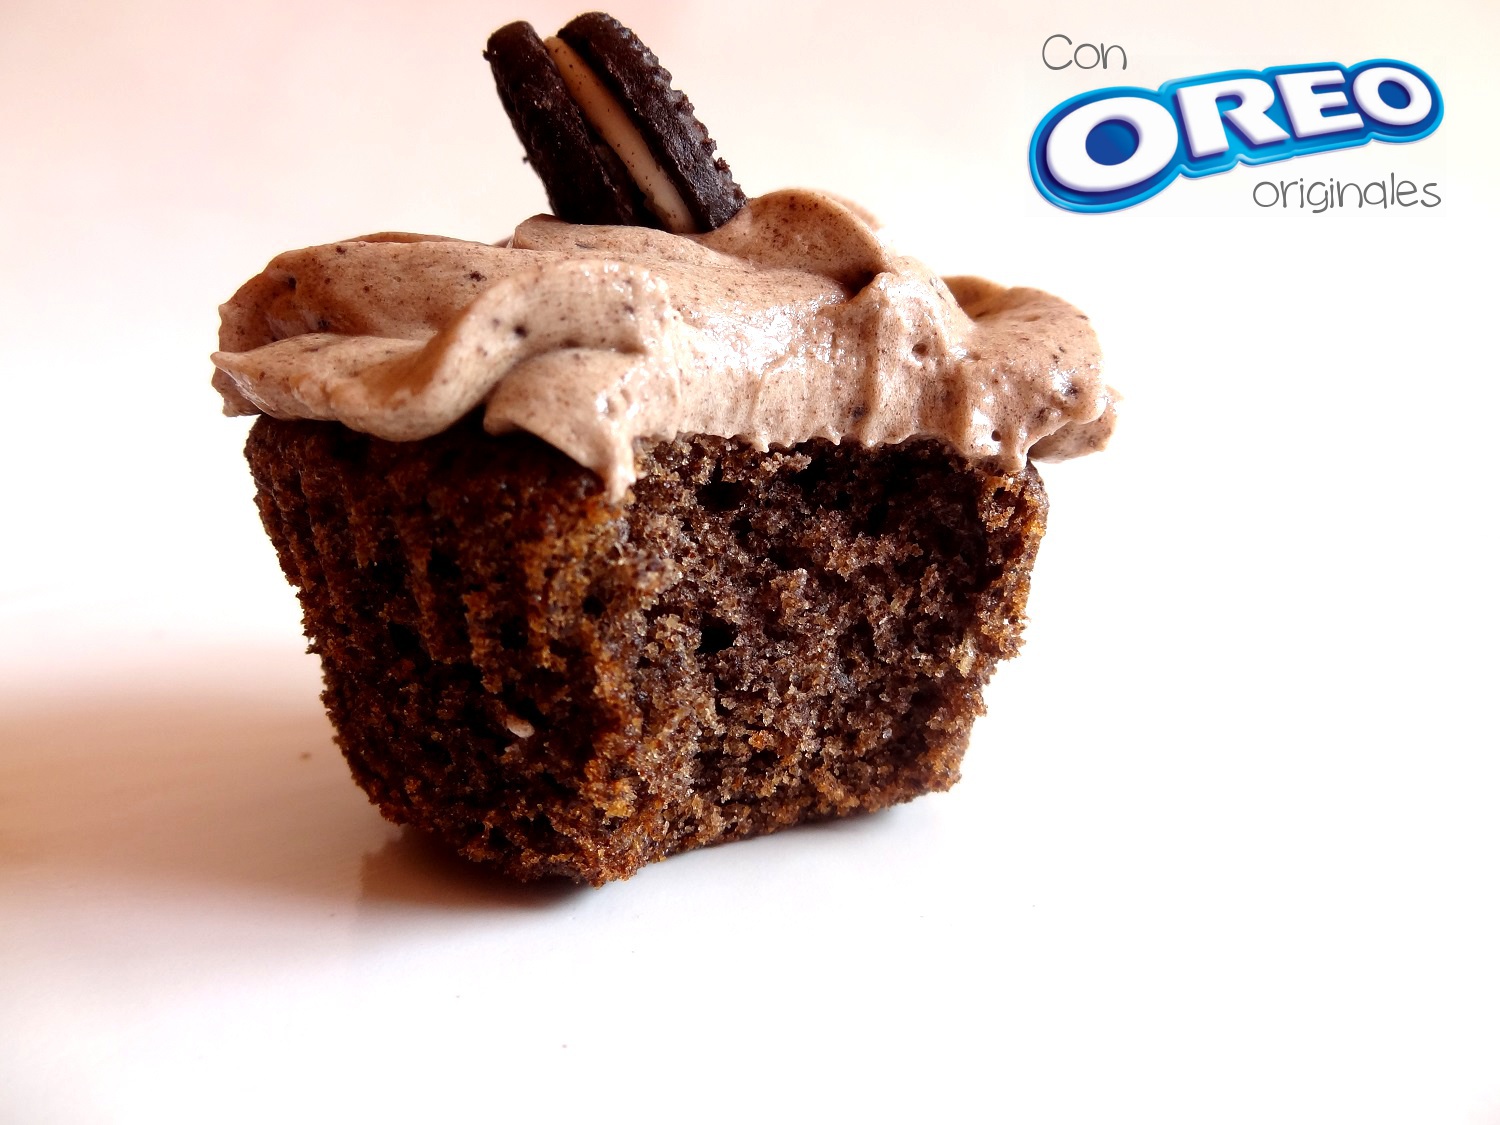 Foto de la receta de cupcakes de Oreo